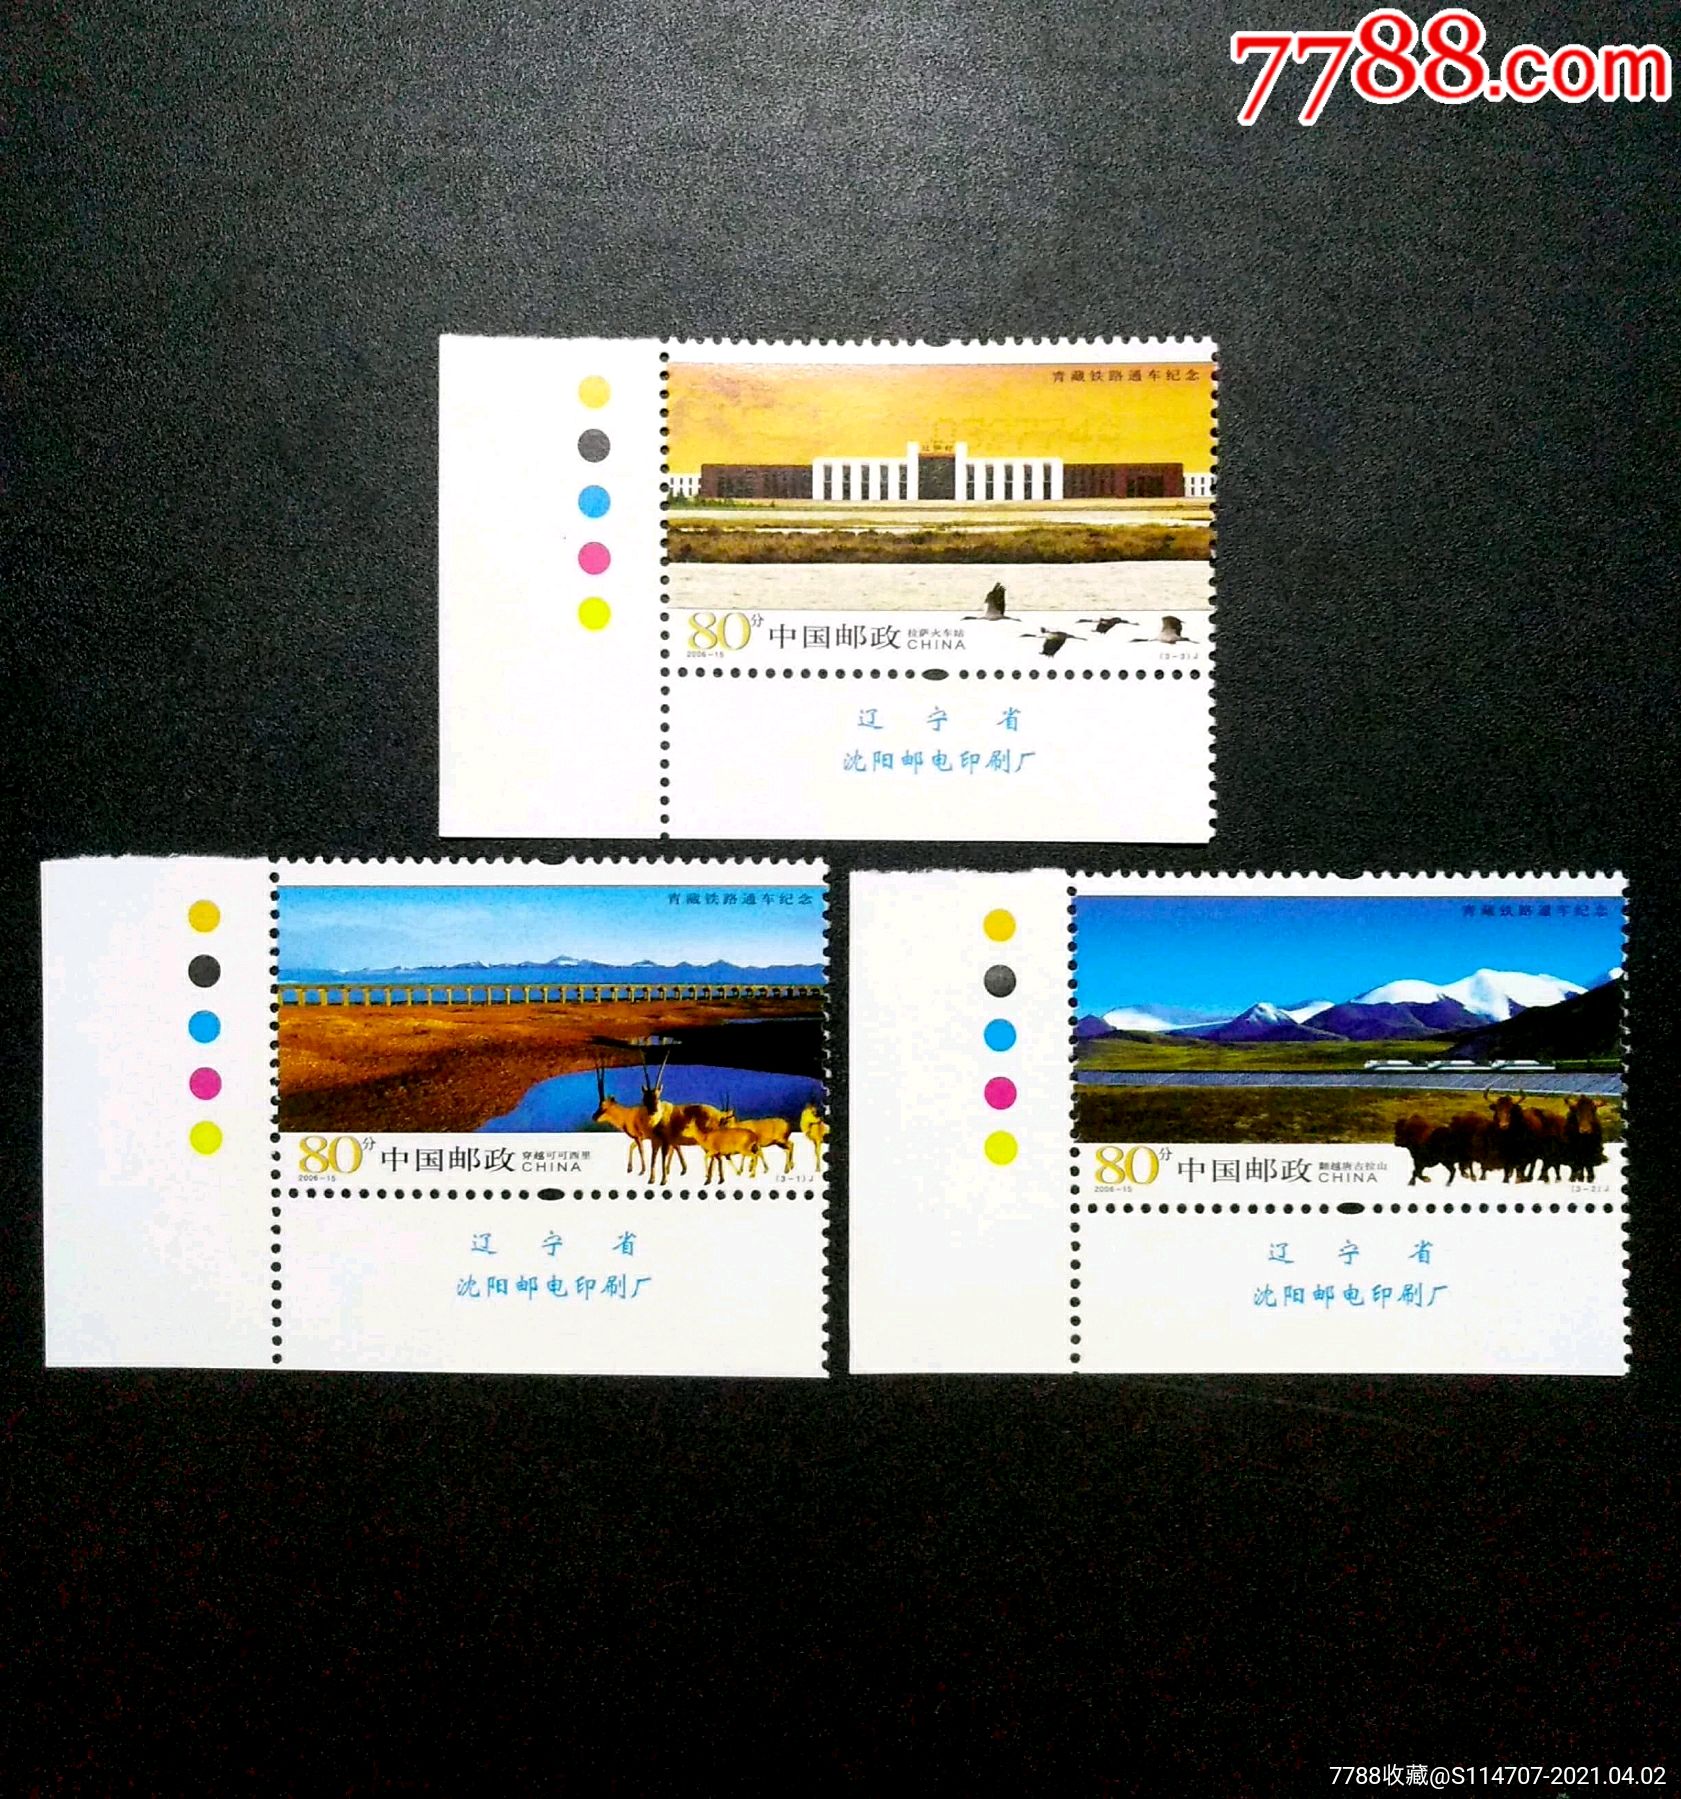 2006-15《青藏铁路通车纪念(j》邮票